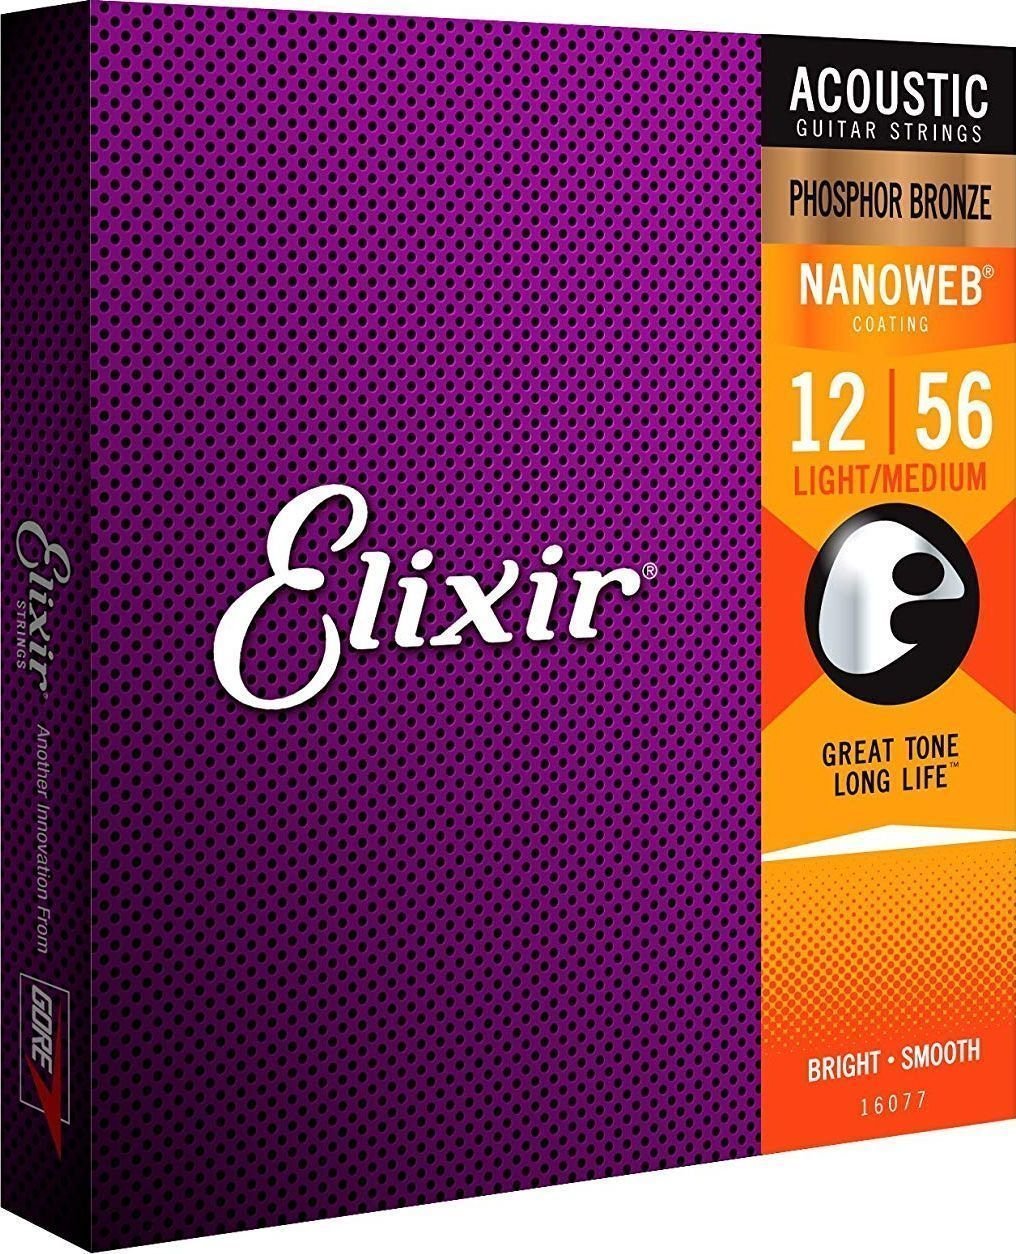 Akusztikus gitárhúrok Elixir 16077 Nanoweb 12-56